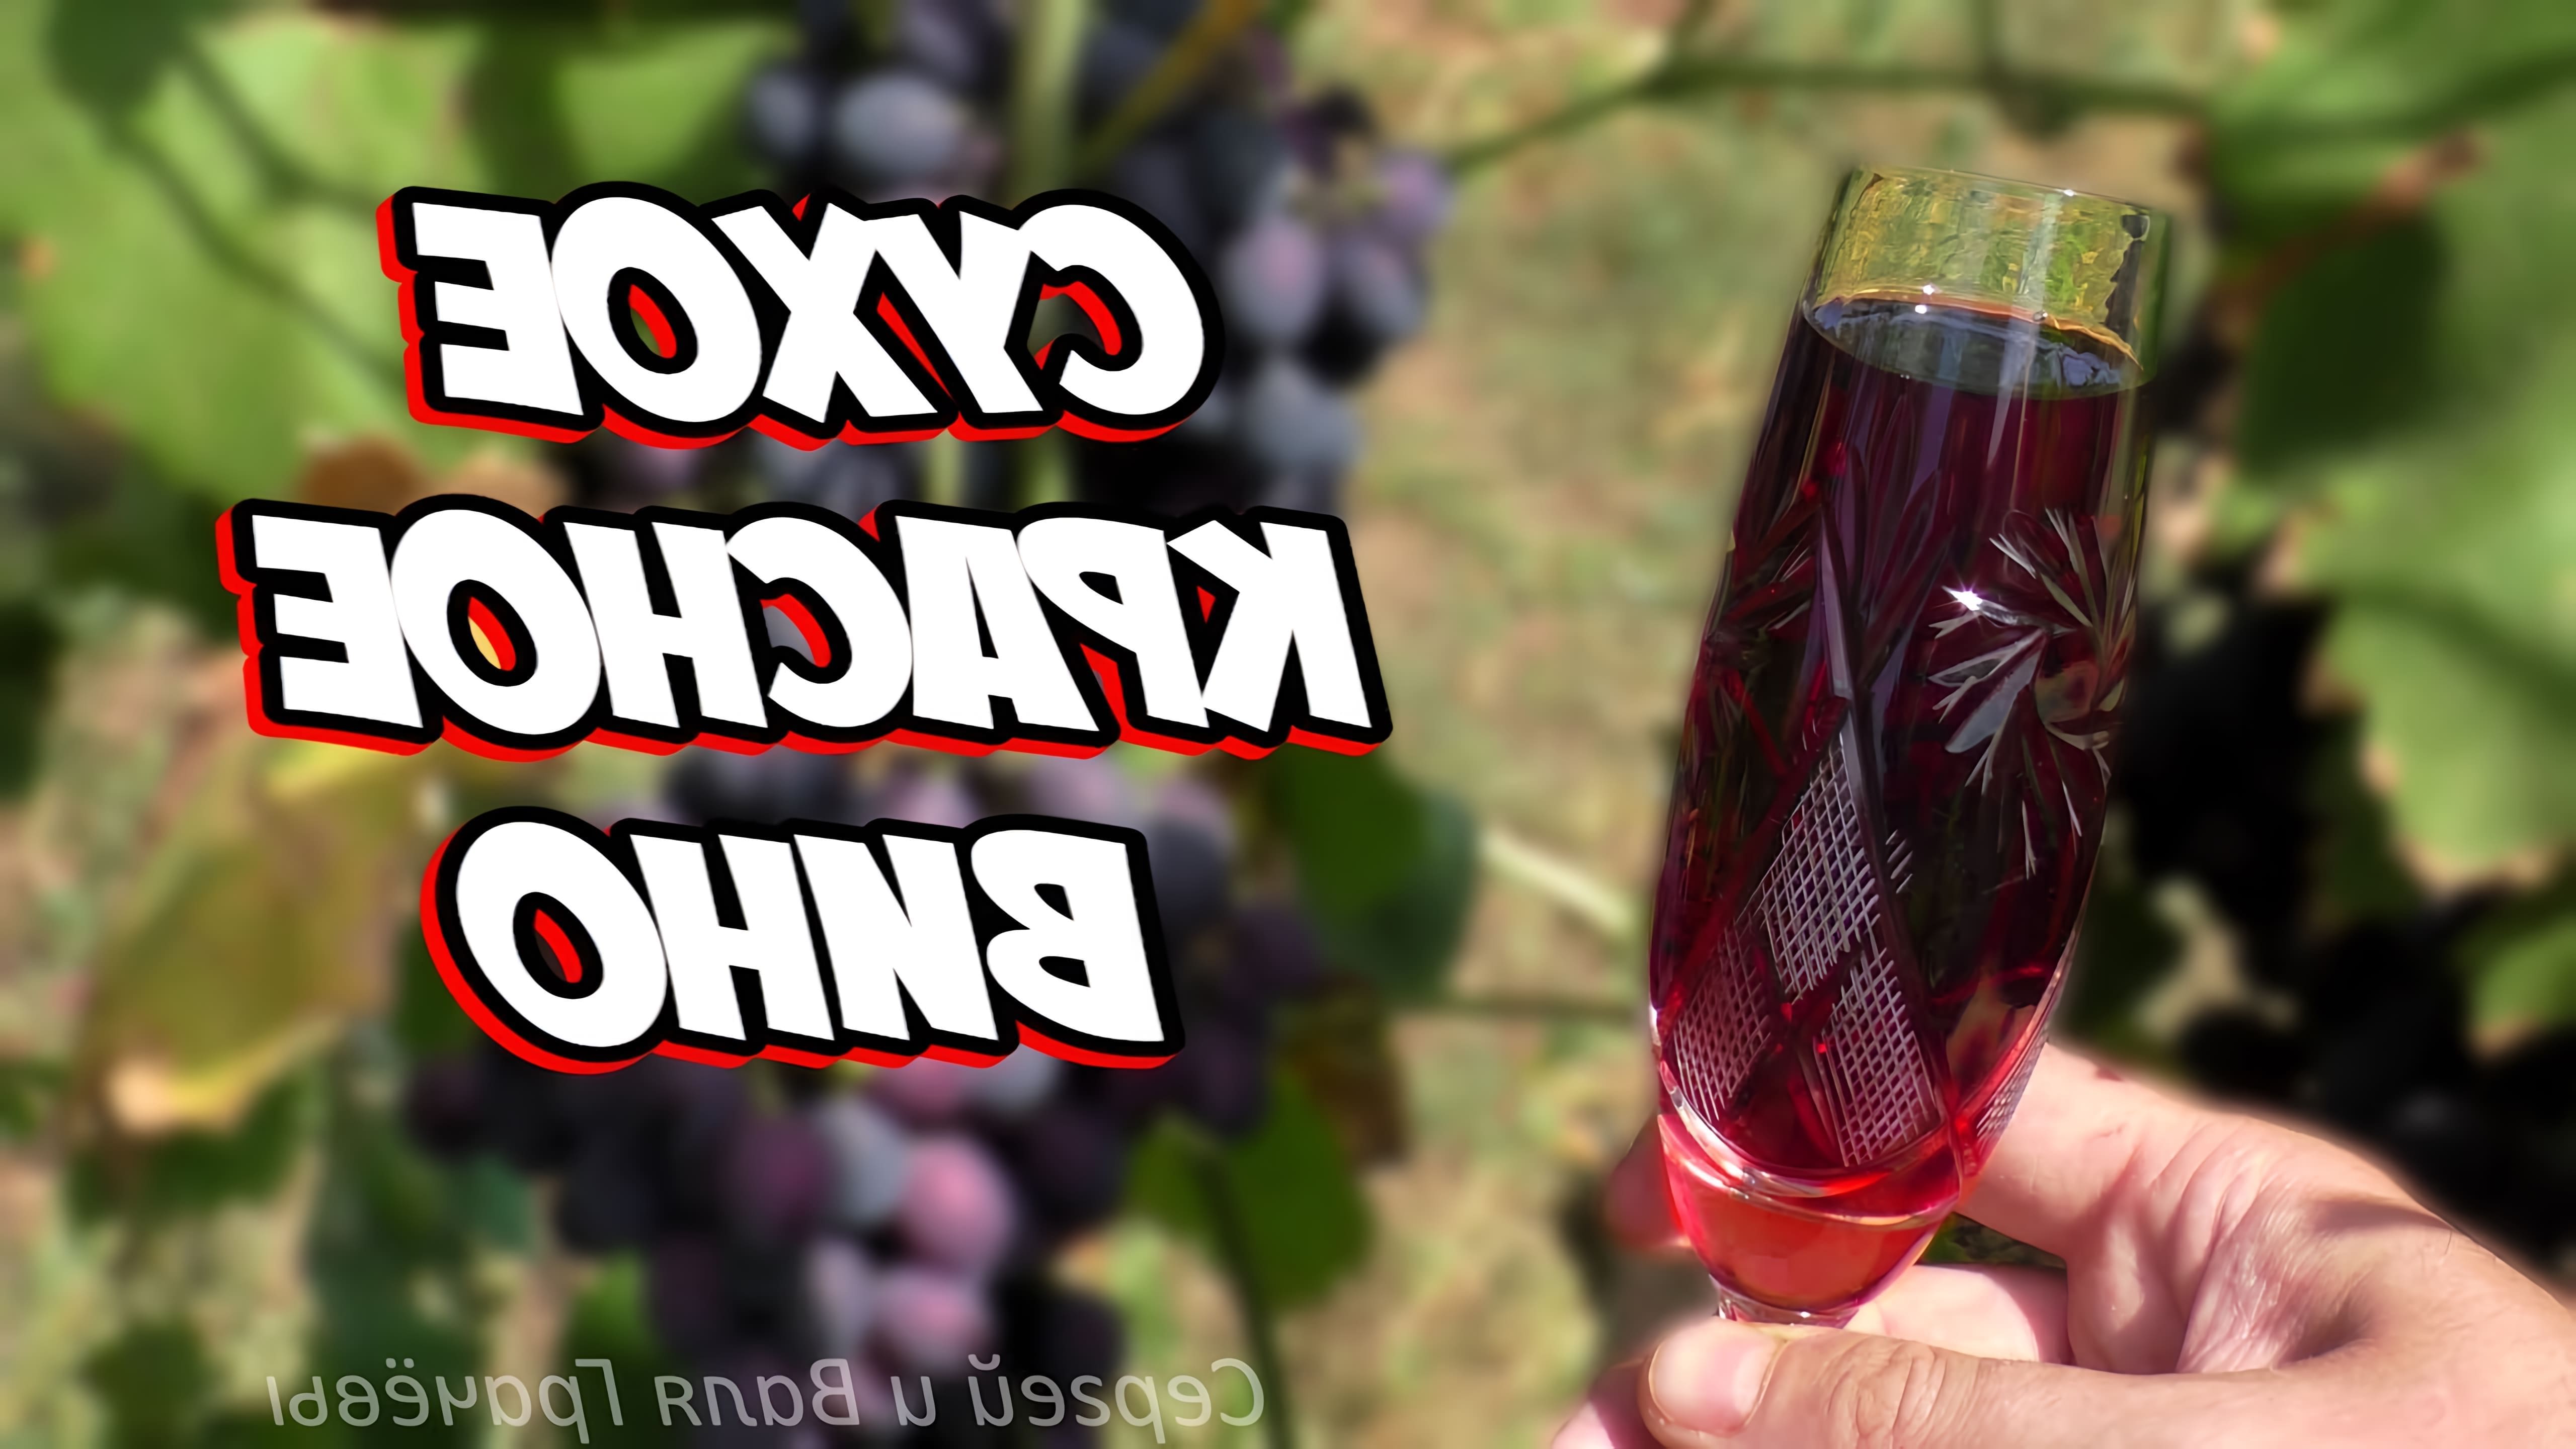 В данном видео рассказывается о том, как приготовить сухое вино из темных сортов винограда